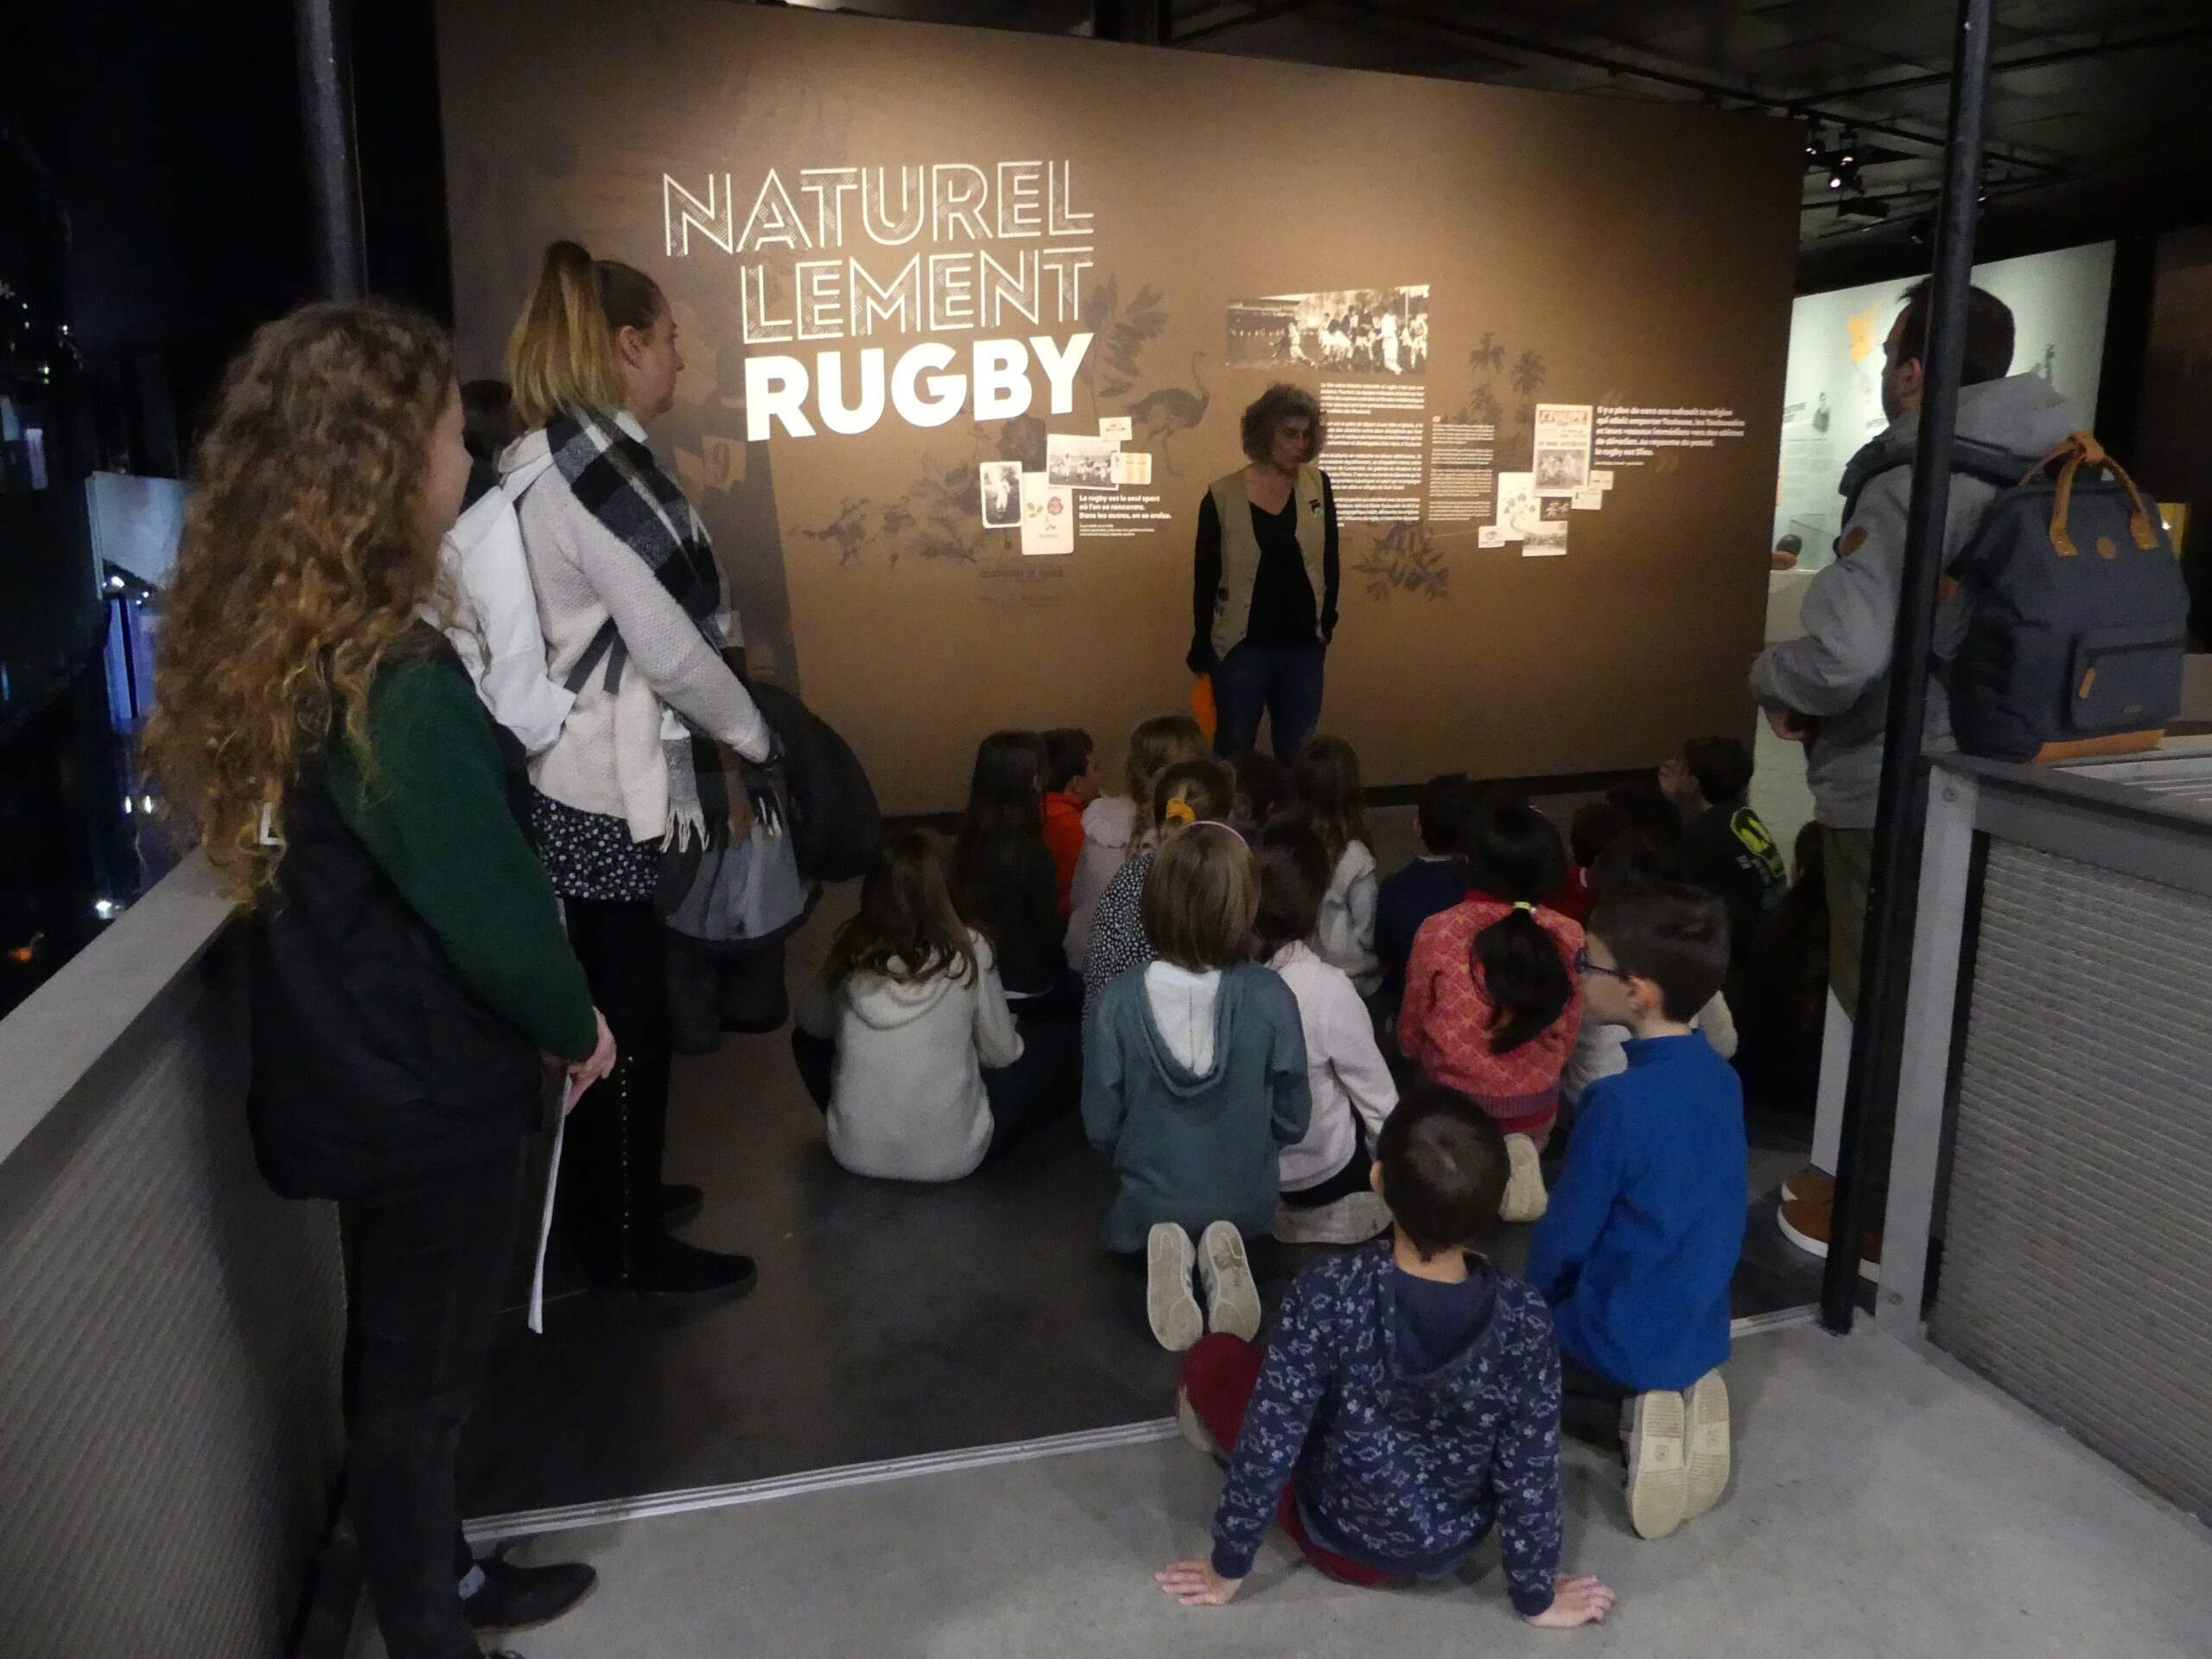 Photographie d’un groupe d’enfant devant l’exposition temporaire « naturellement rugby » au muséum